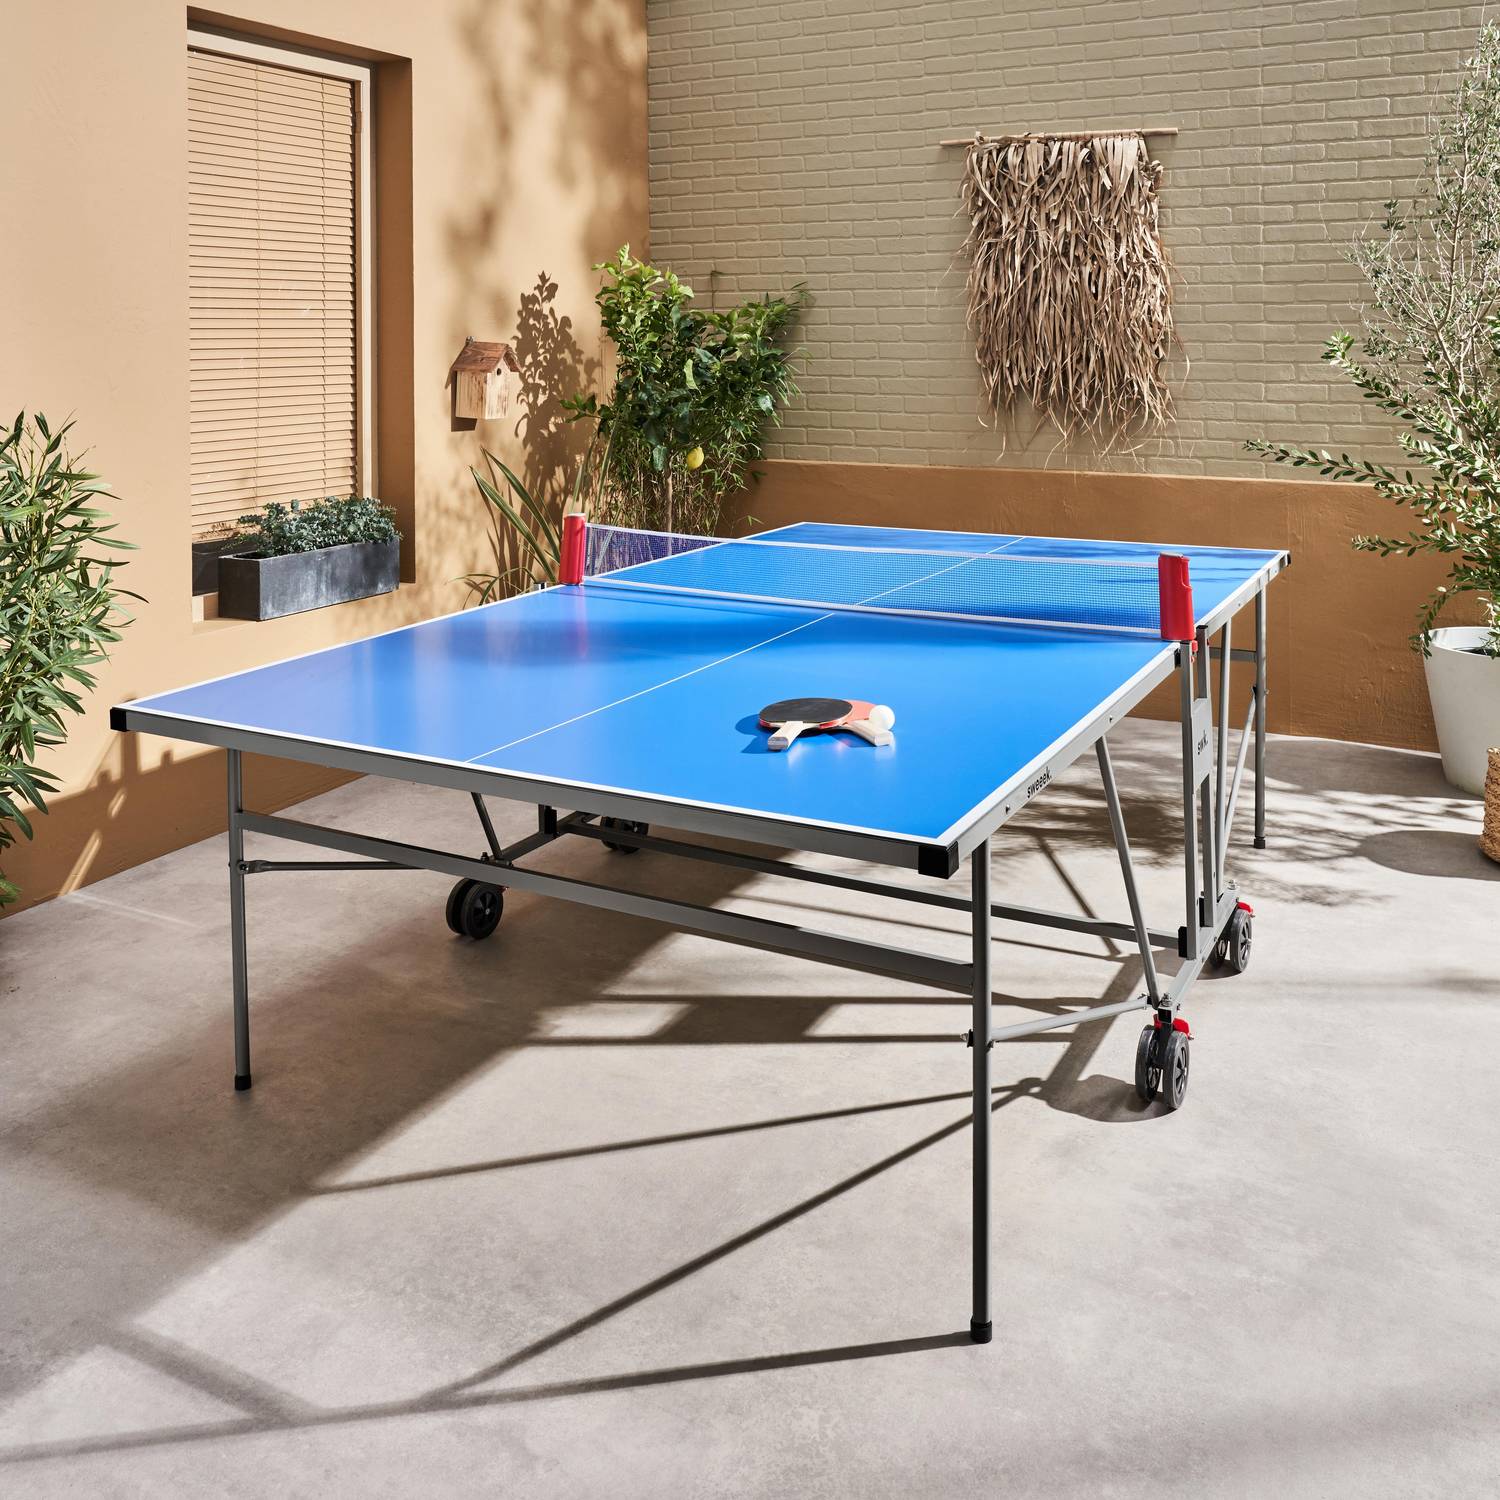 INDOOR Tischtennis Ping Pong blau - Klapptisch mit 4 Schlägern und 6 Bällen, für den Innenbereich, Tischtennissport Photo1